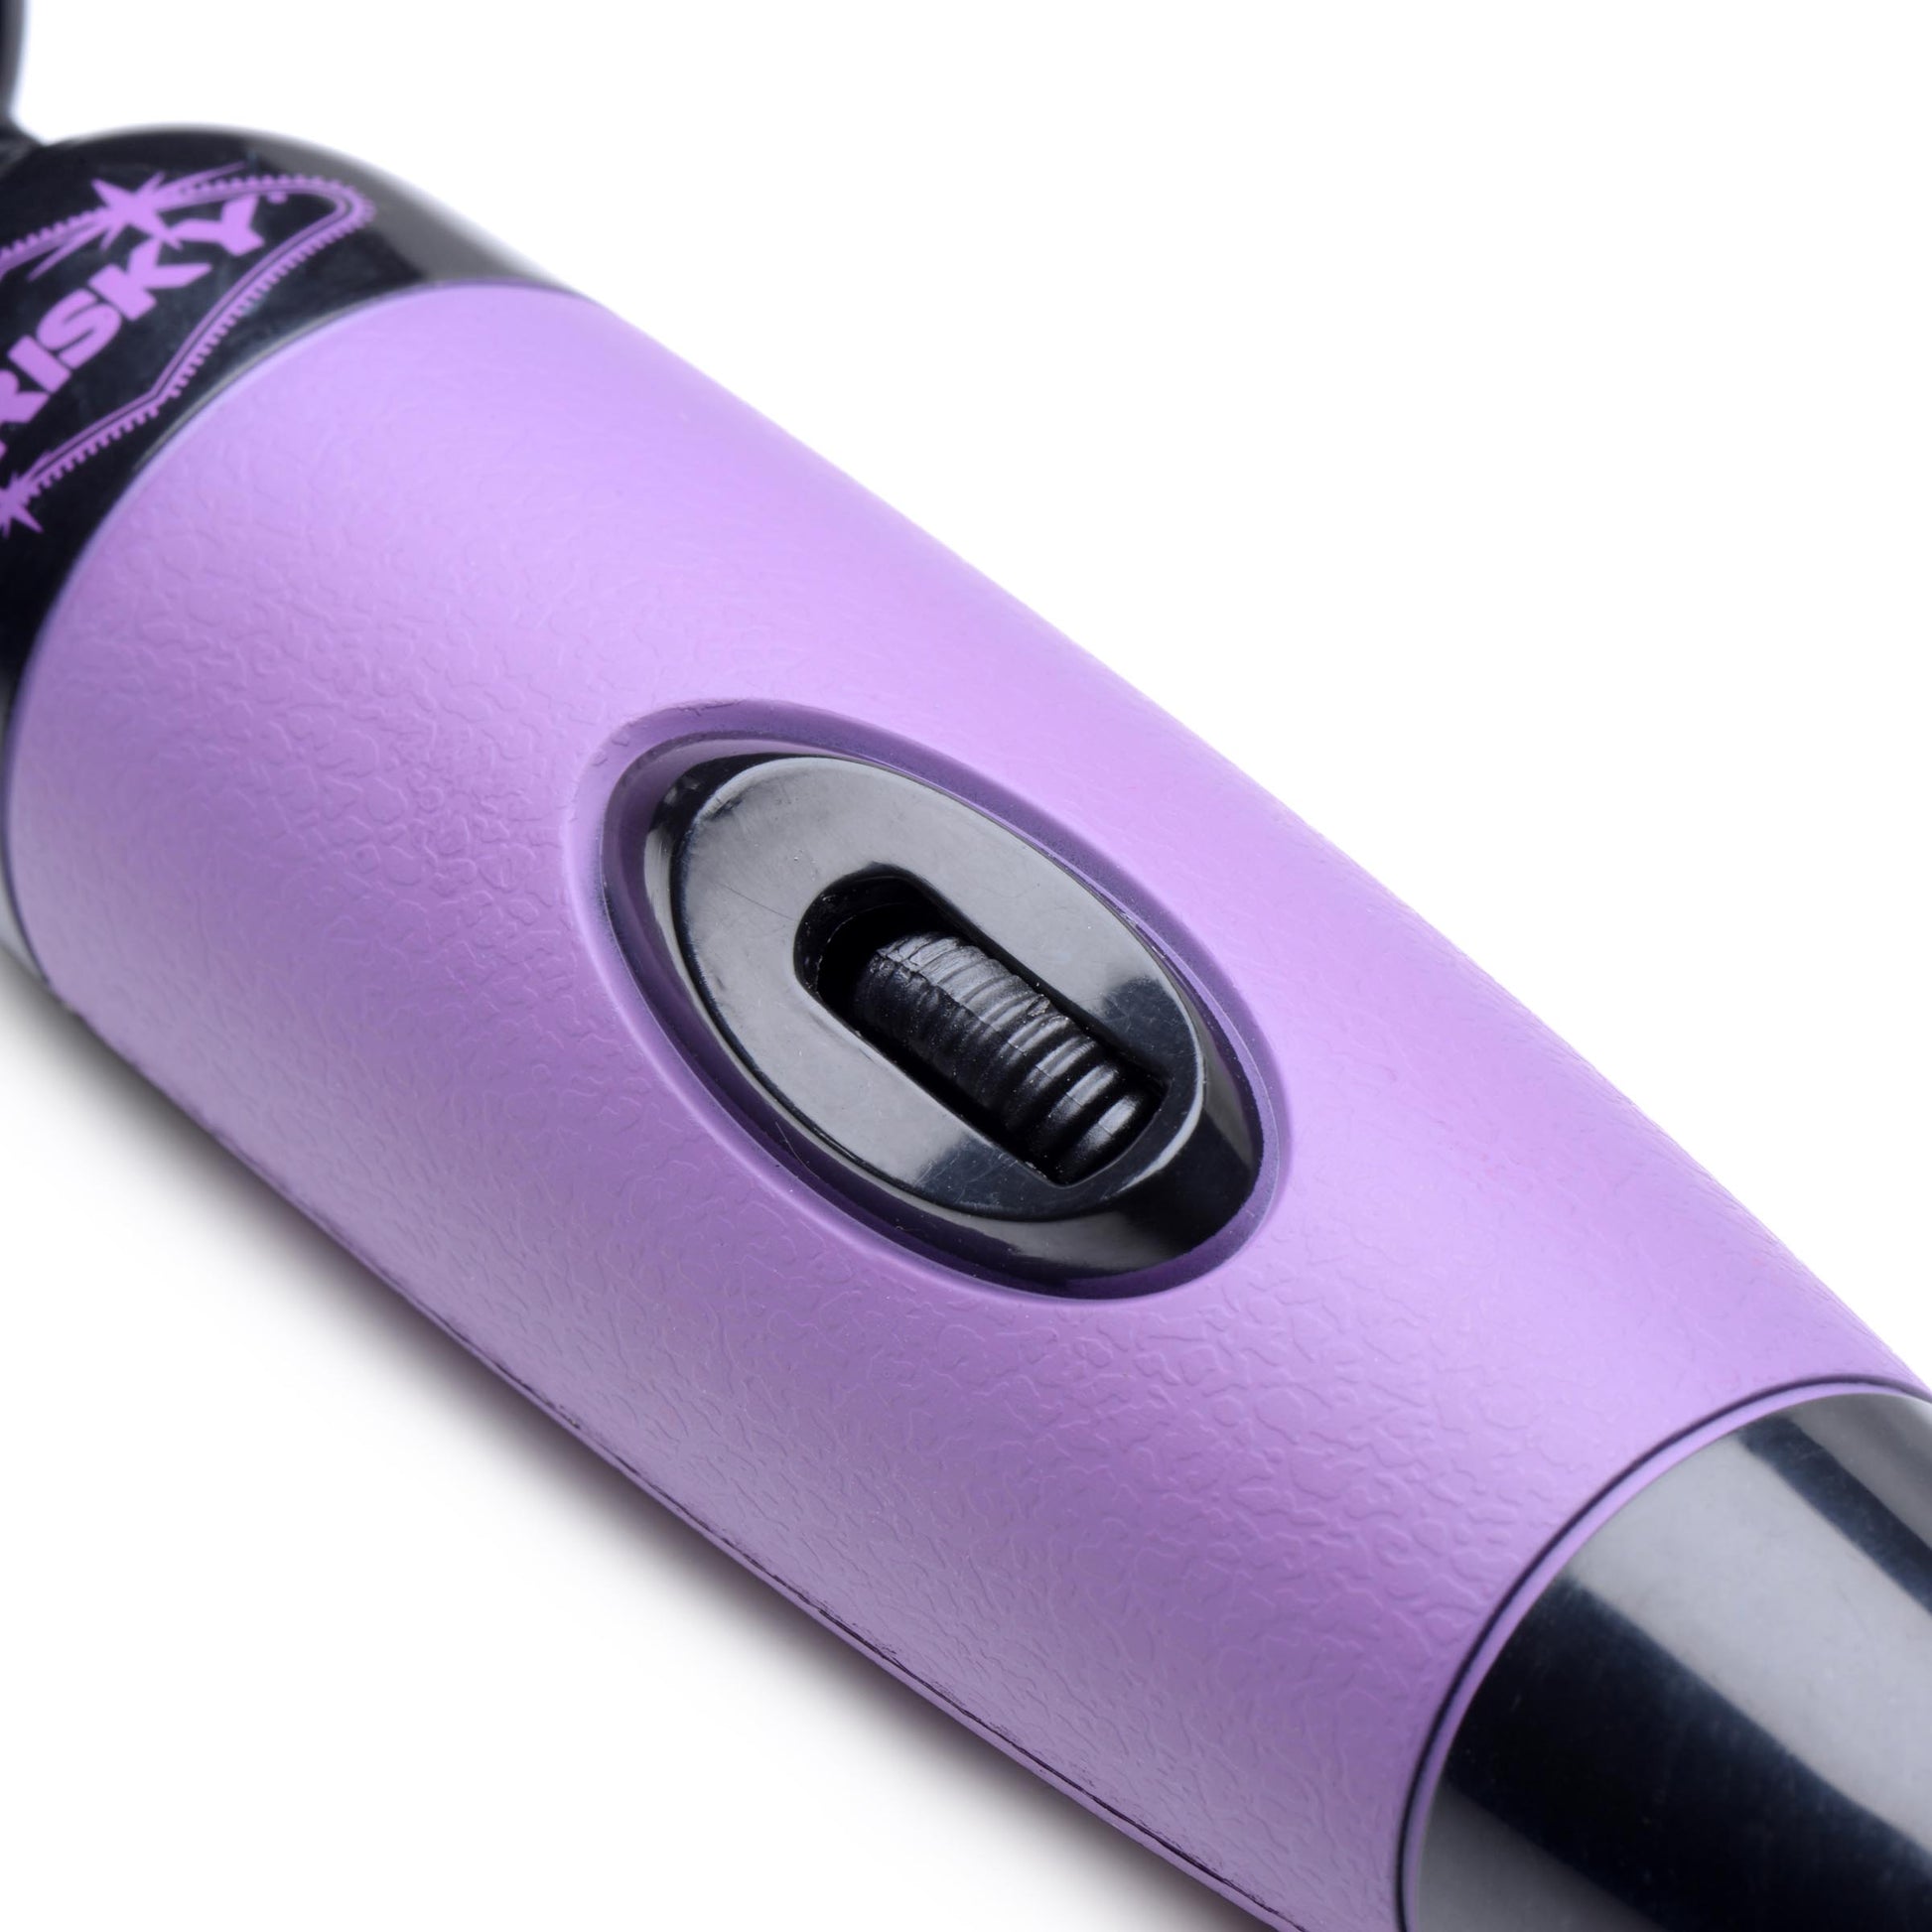 Playful Pleasure Multi-Speed Vibrating Wand - Purple - UABDSM